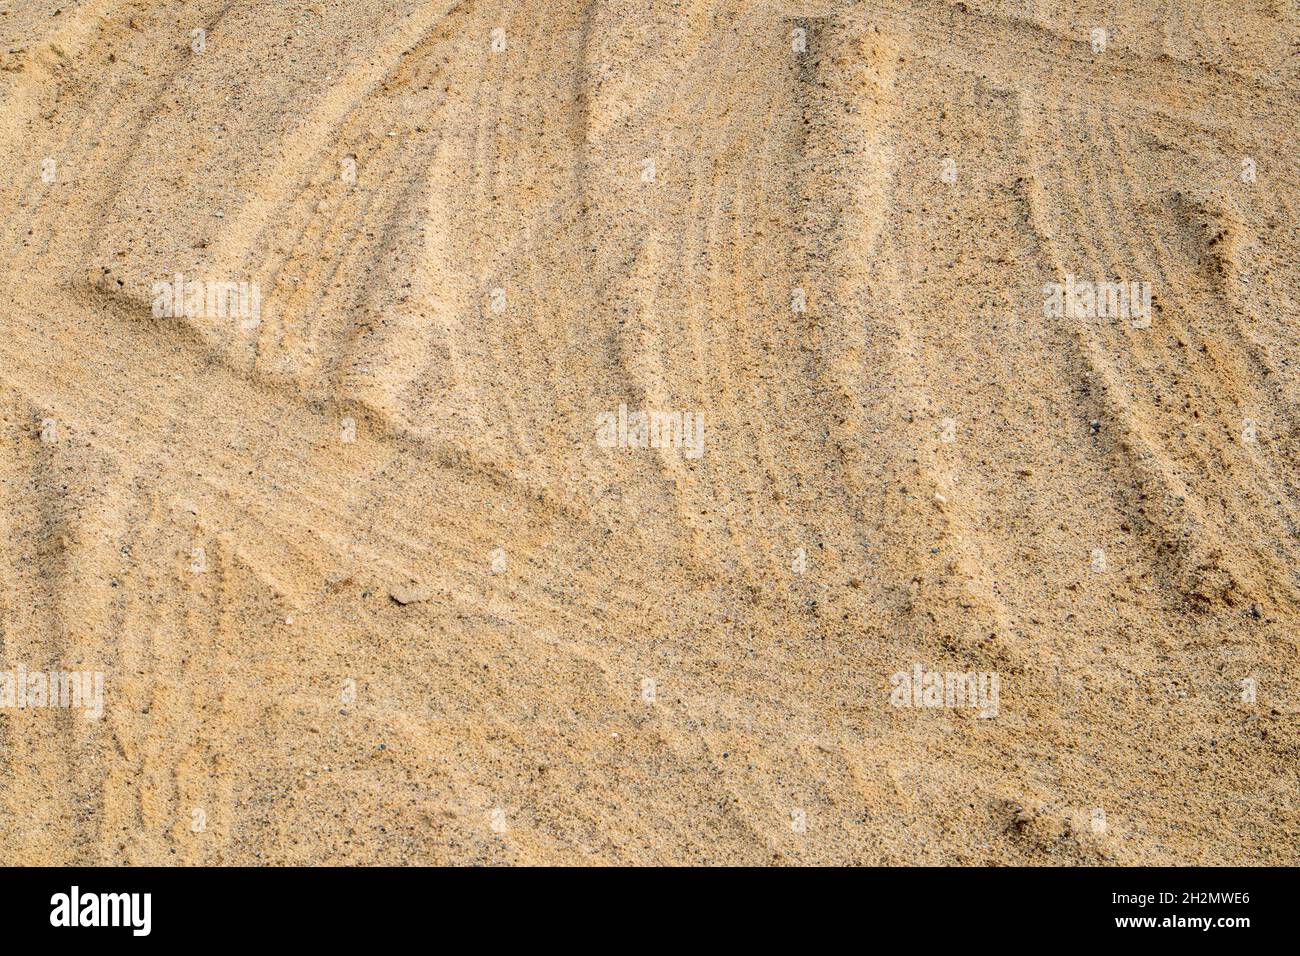 Leichter Sand, der von Reifenspuren zertrampelt wird, kann als Hintergrund oder Textur verwendet werden Stockfoto